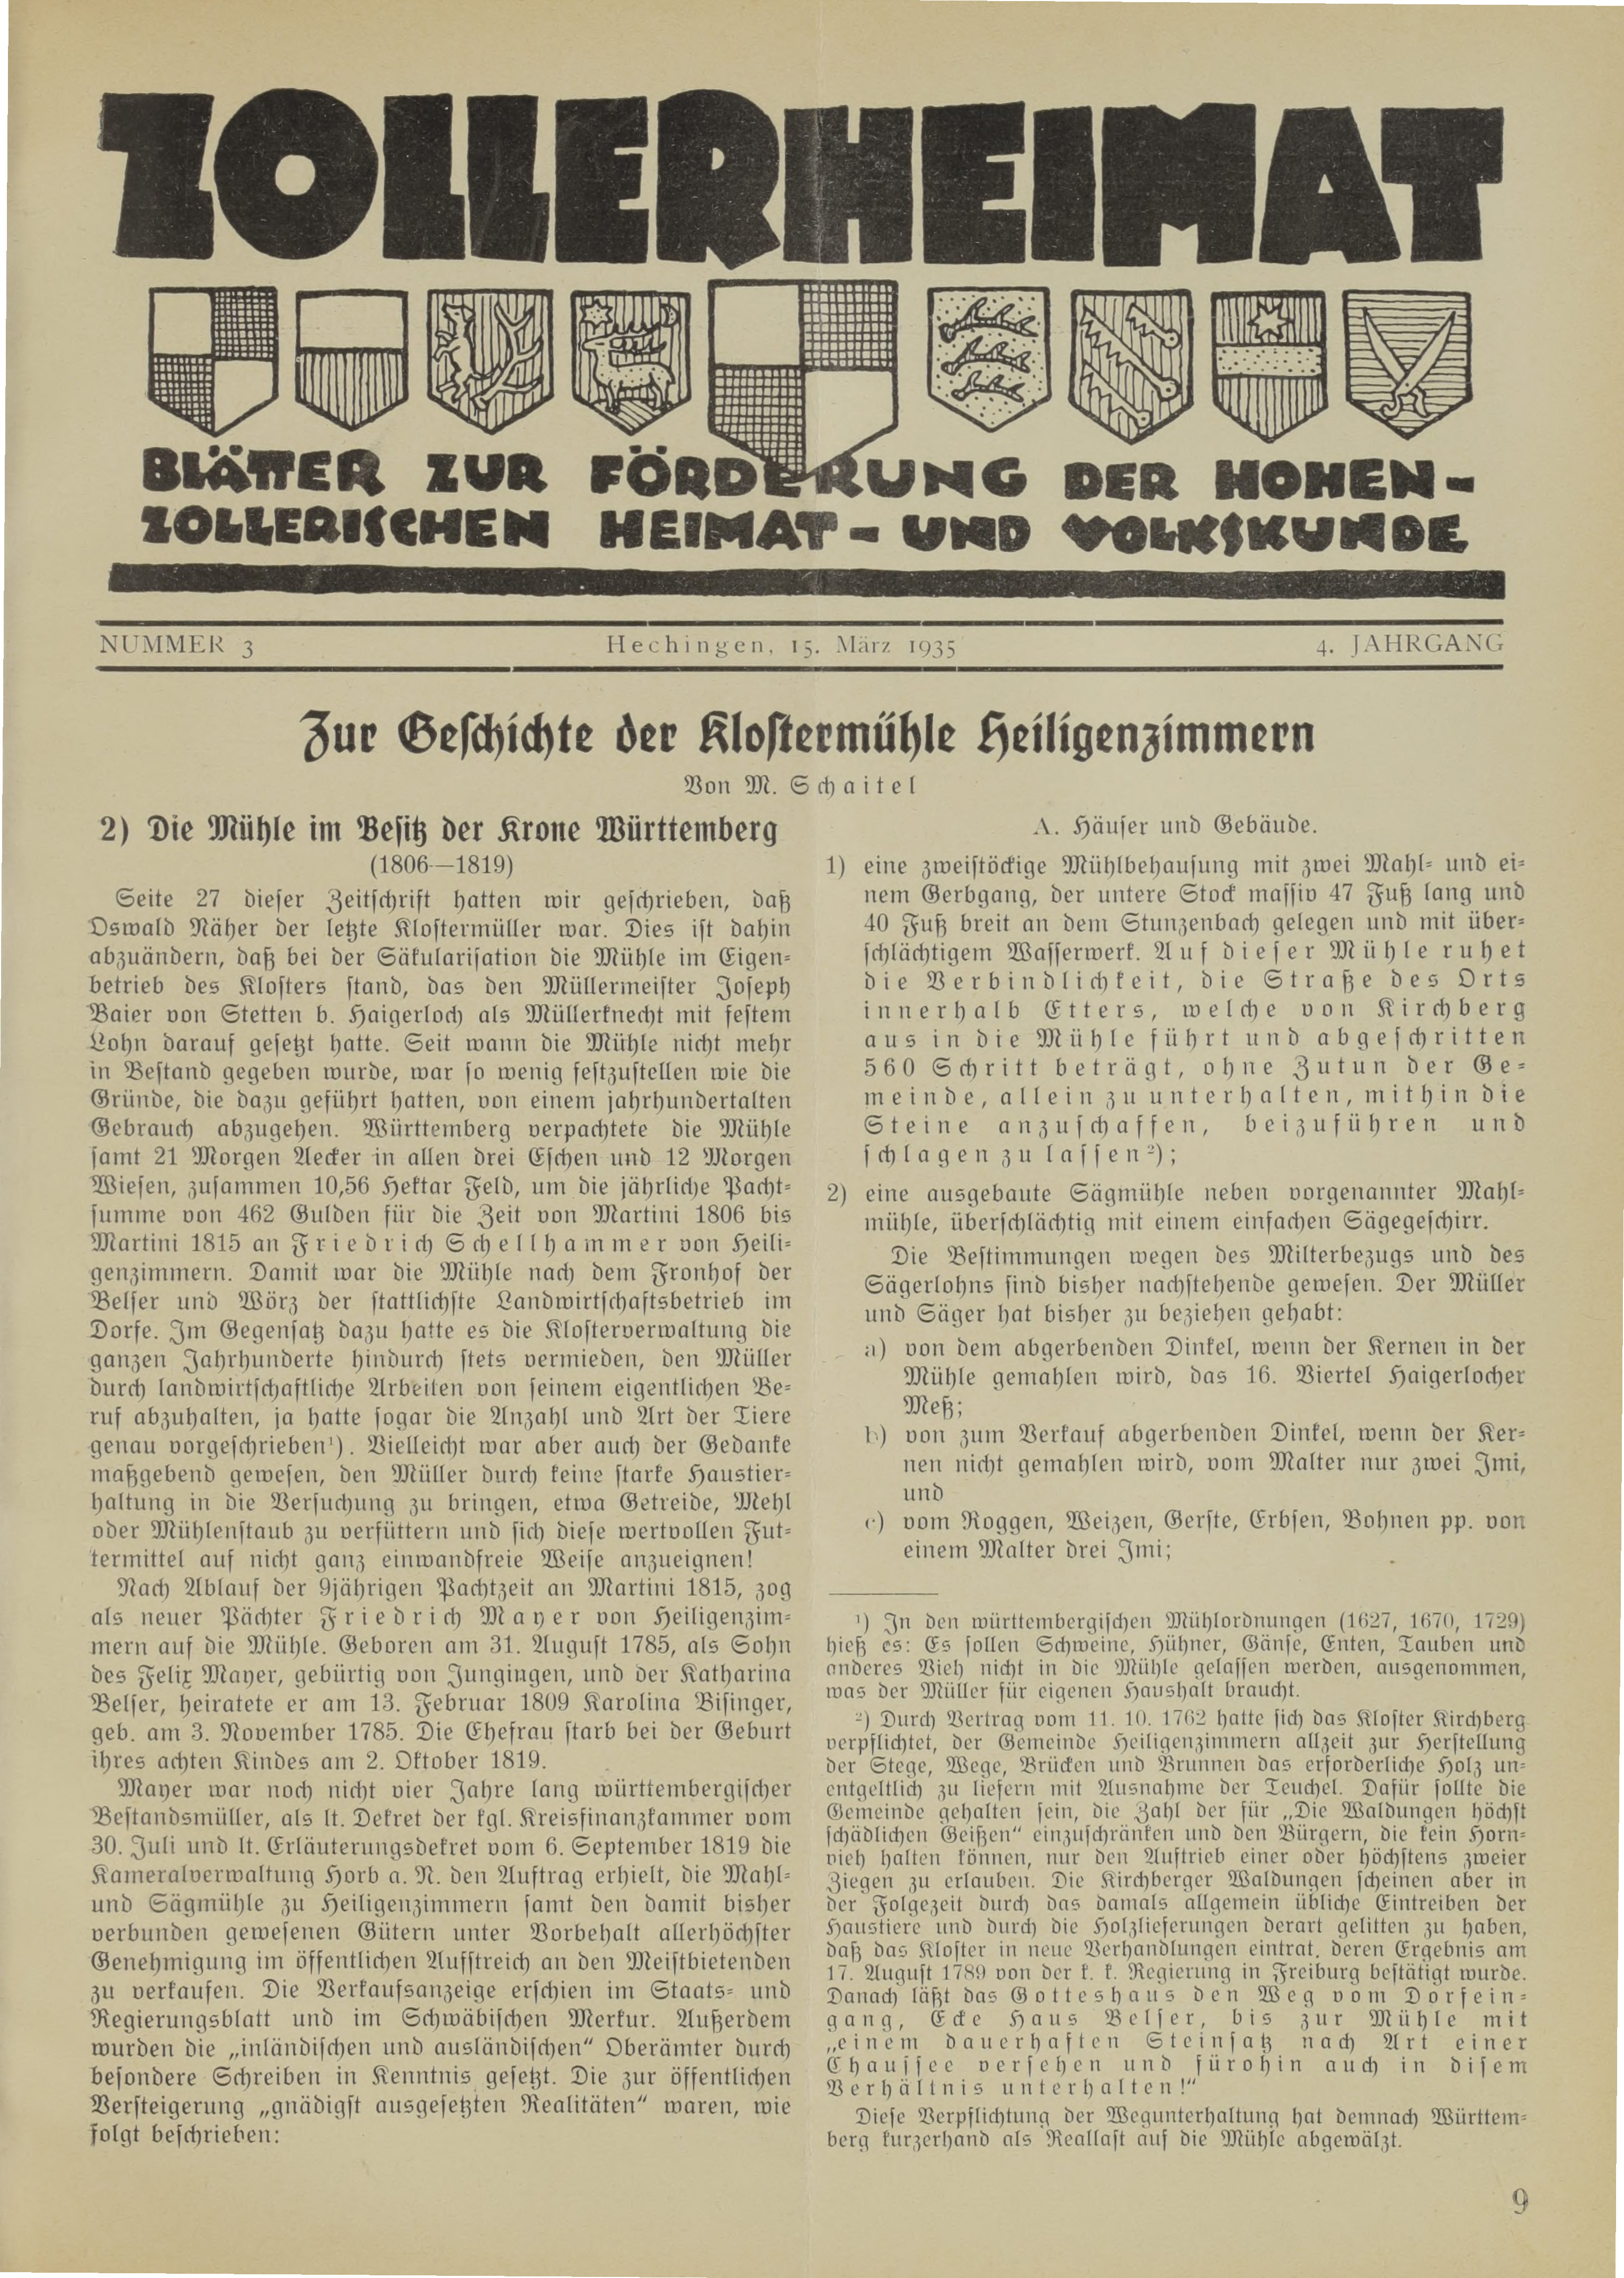                     Ansehen Bd. 4 Nr. 3 (1935): Zollerheimat
                